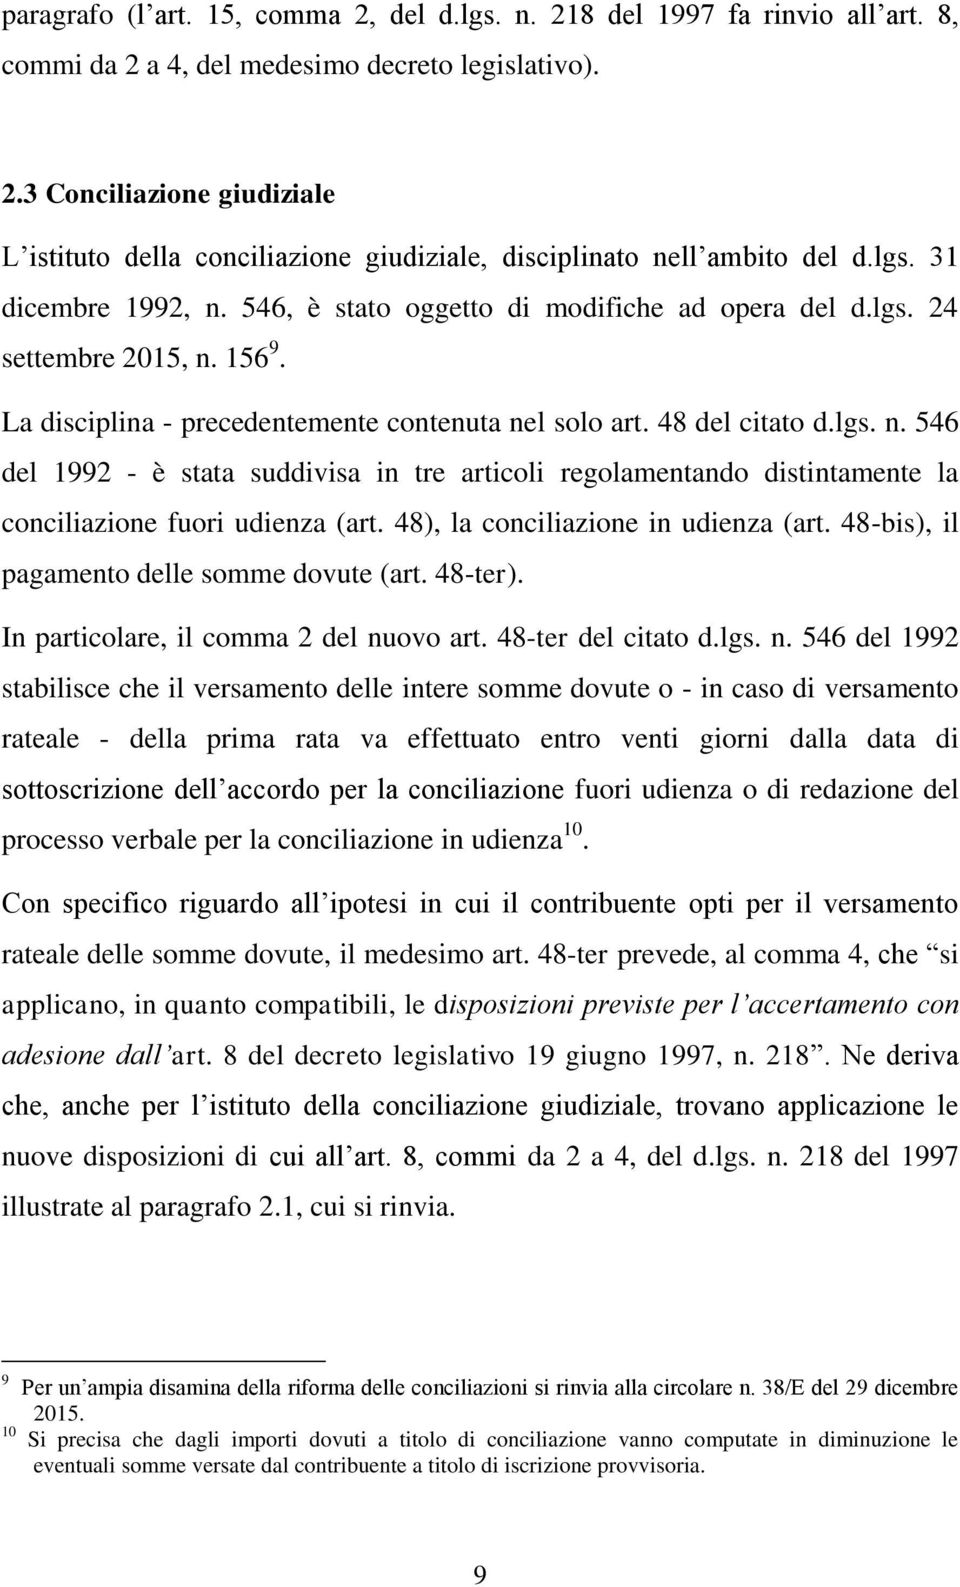 48), la conciliazione in udienza (art. 48-bis), il pagamento delle somme dovute (art. 48-ter). In particolare, il comma 2 del nu